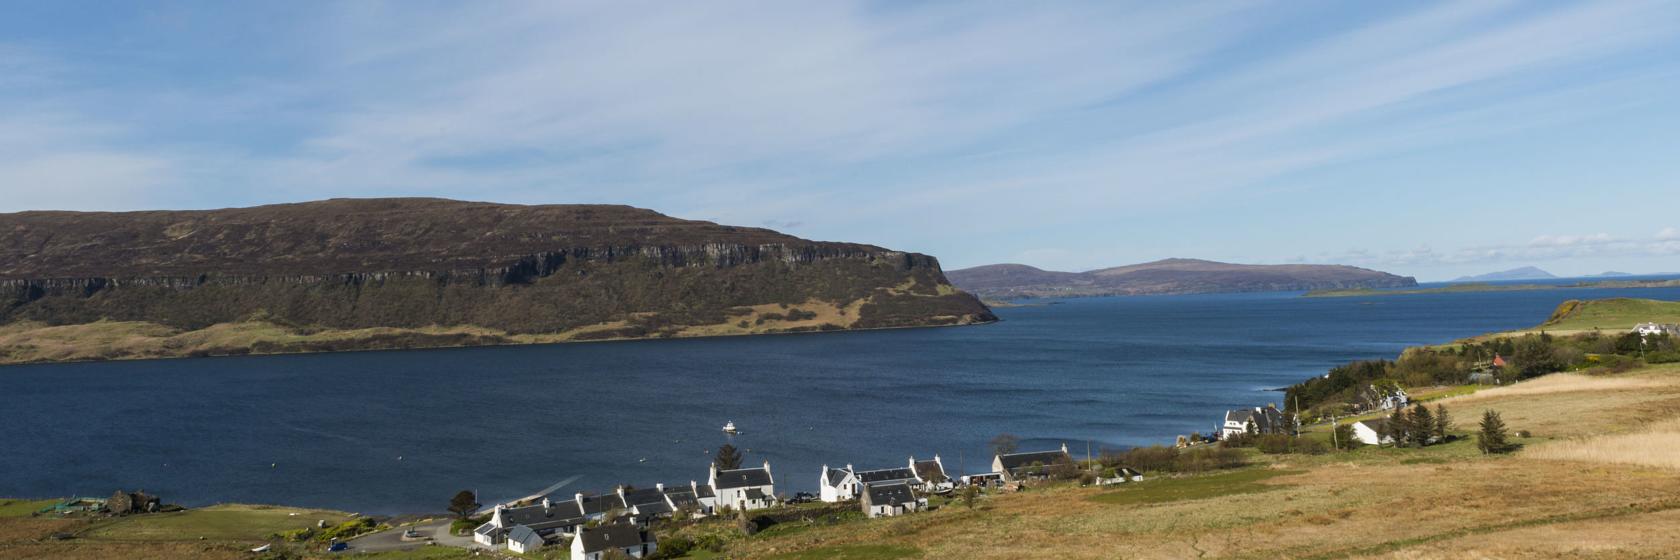 Isle of Skye, Scotland Hotels